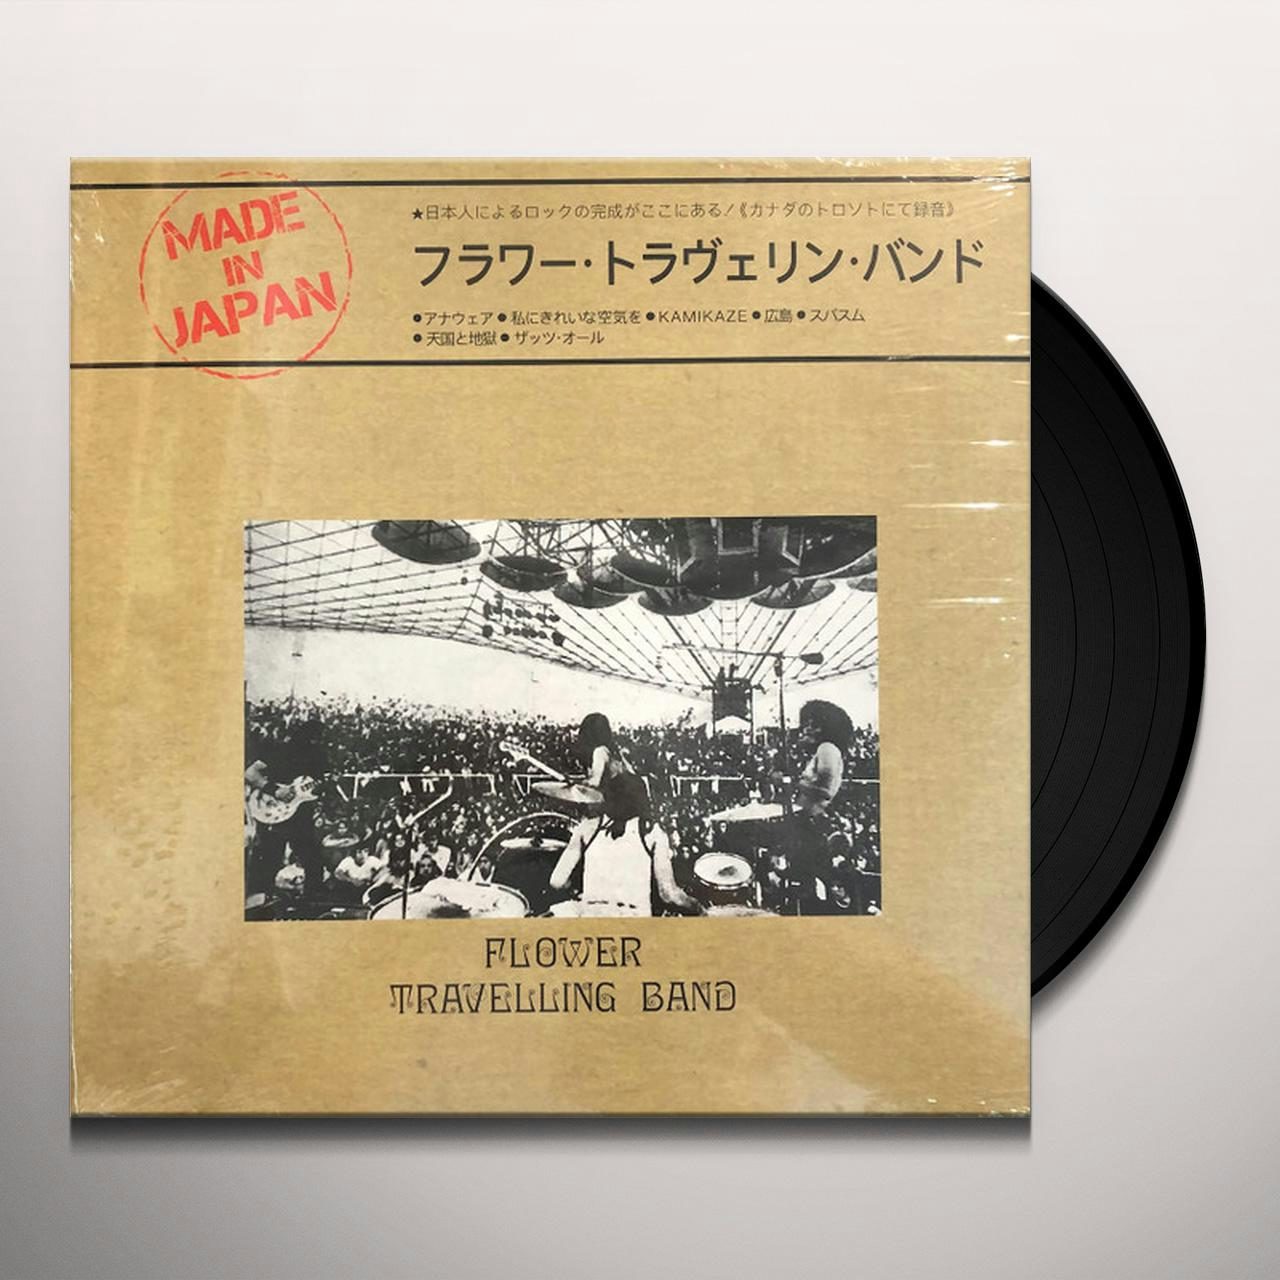 日本のロック激レア盤 フラワートラベリンバンド【MADE IN JAPAN】 LP